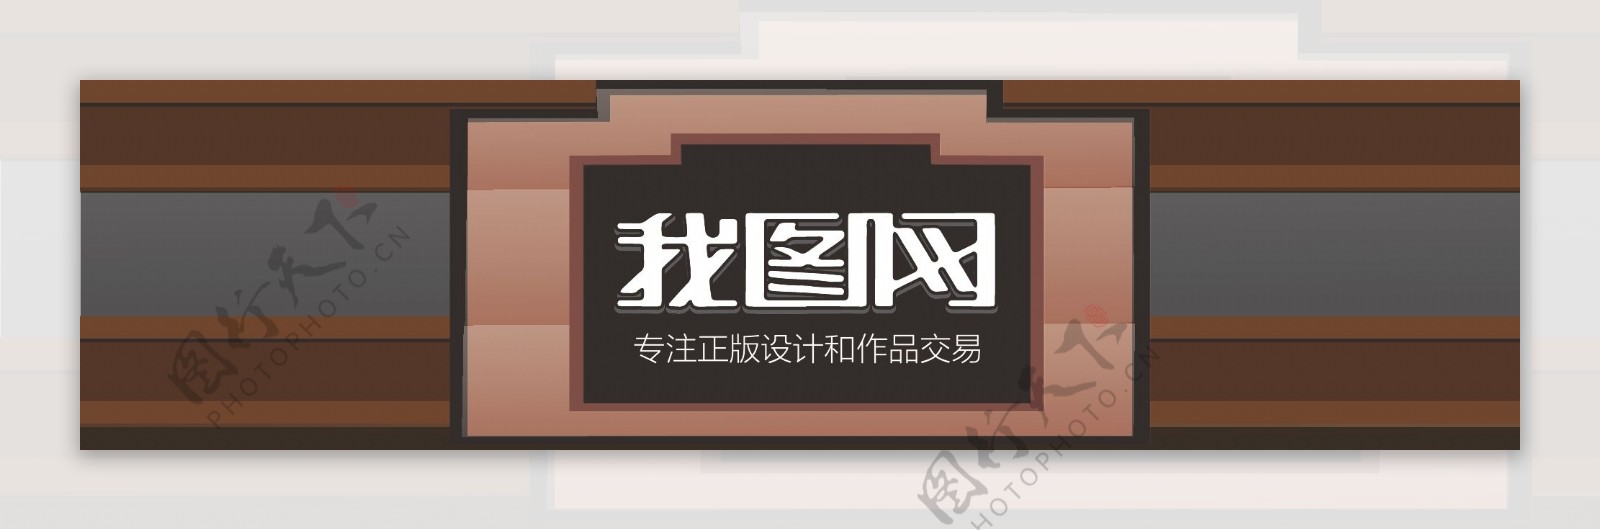 中式复古木纹立体门头设计